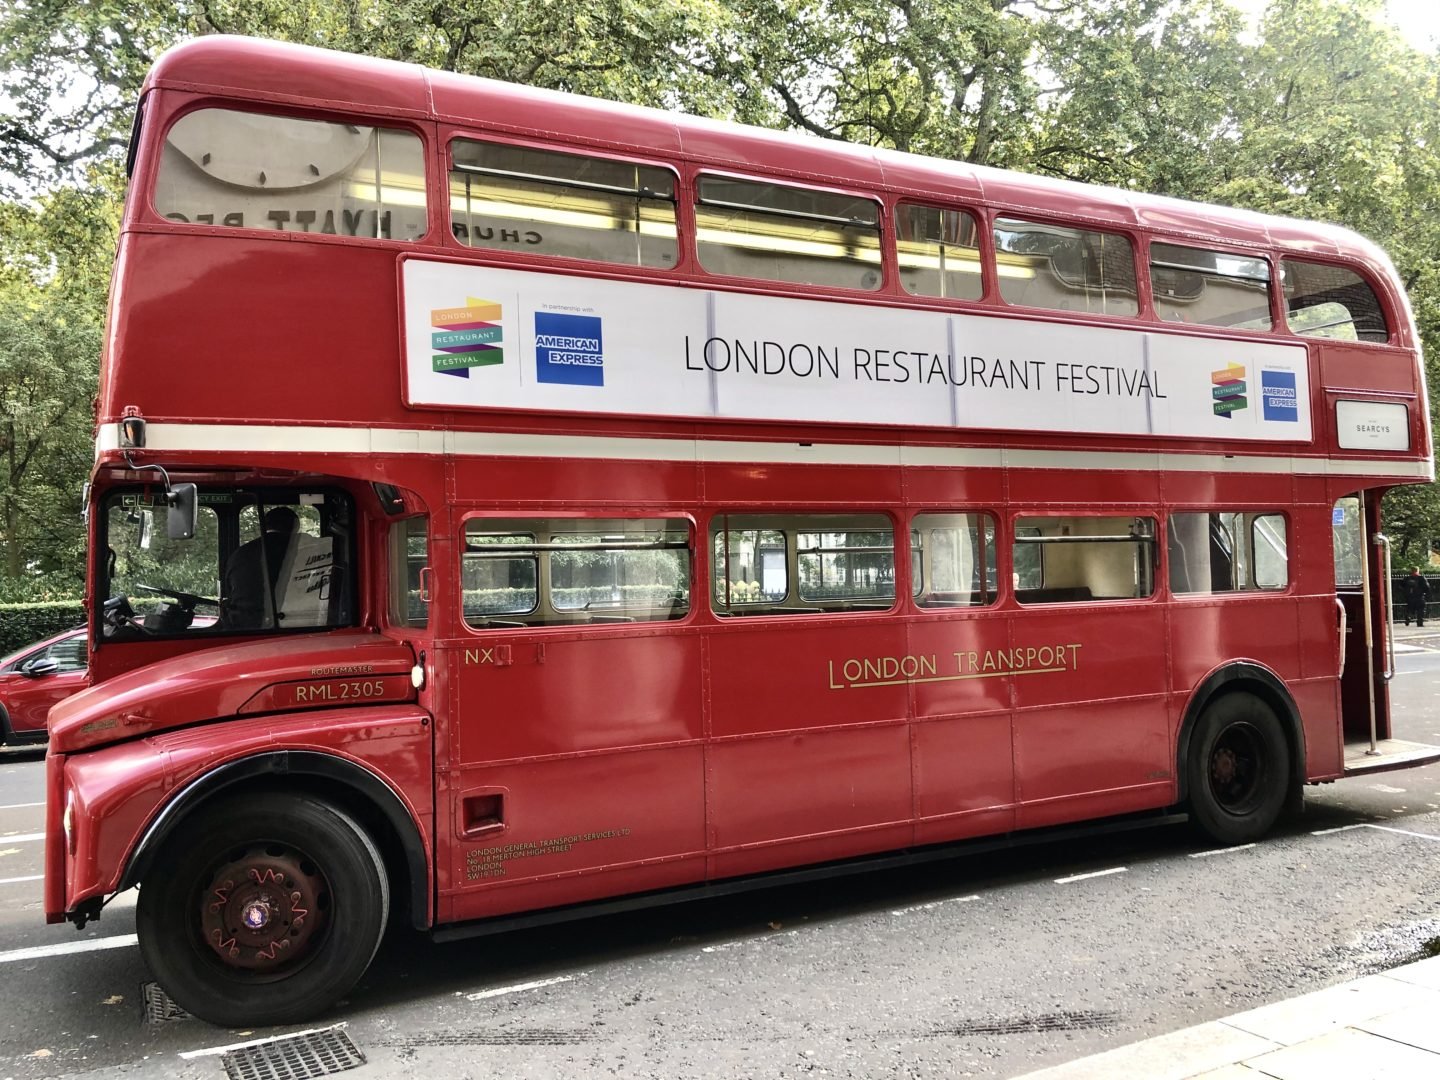 London restaurant festival route master bus